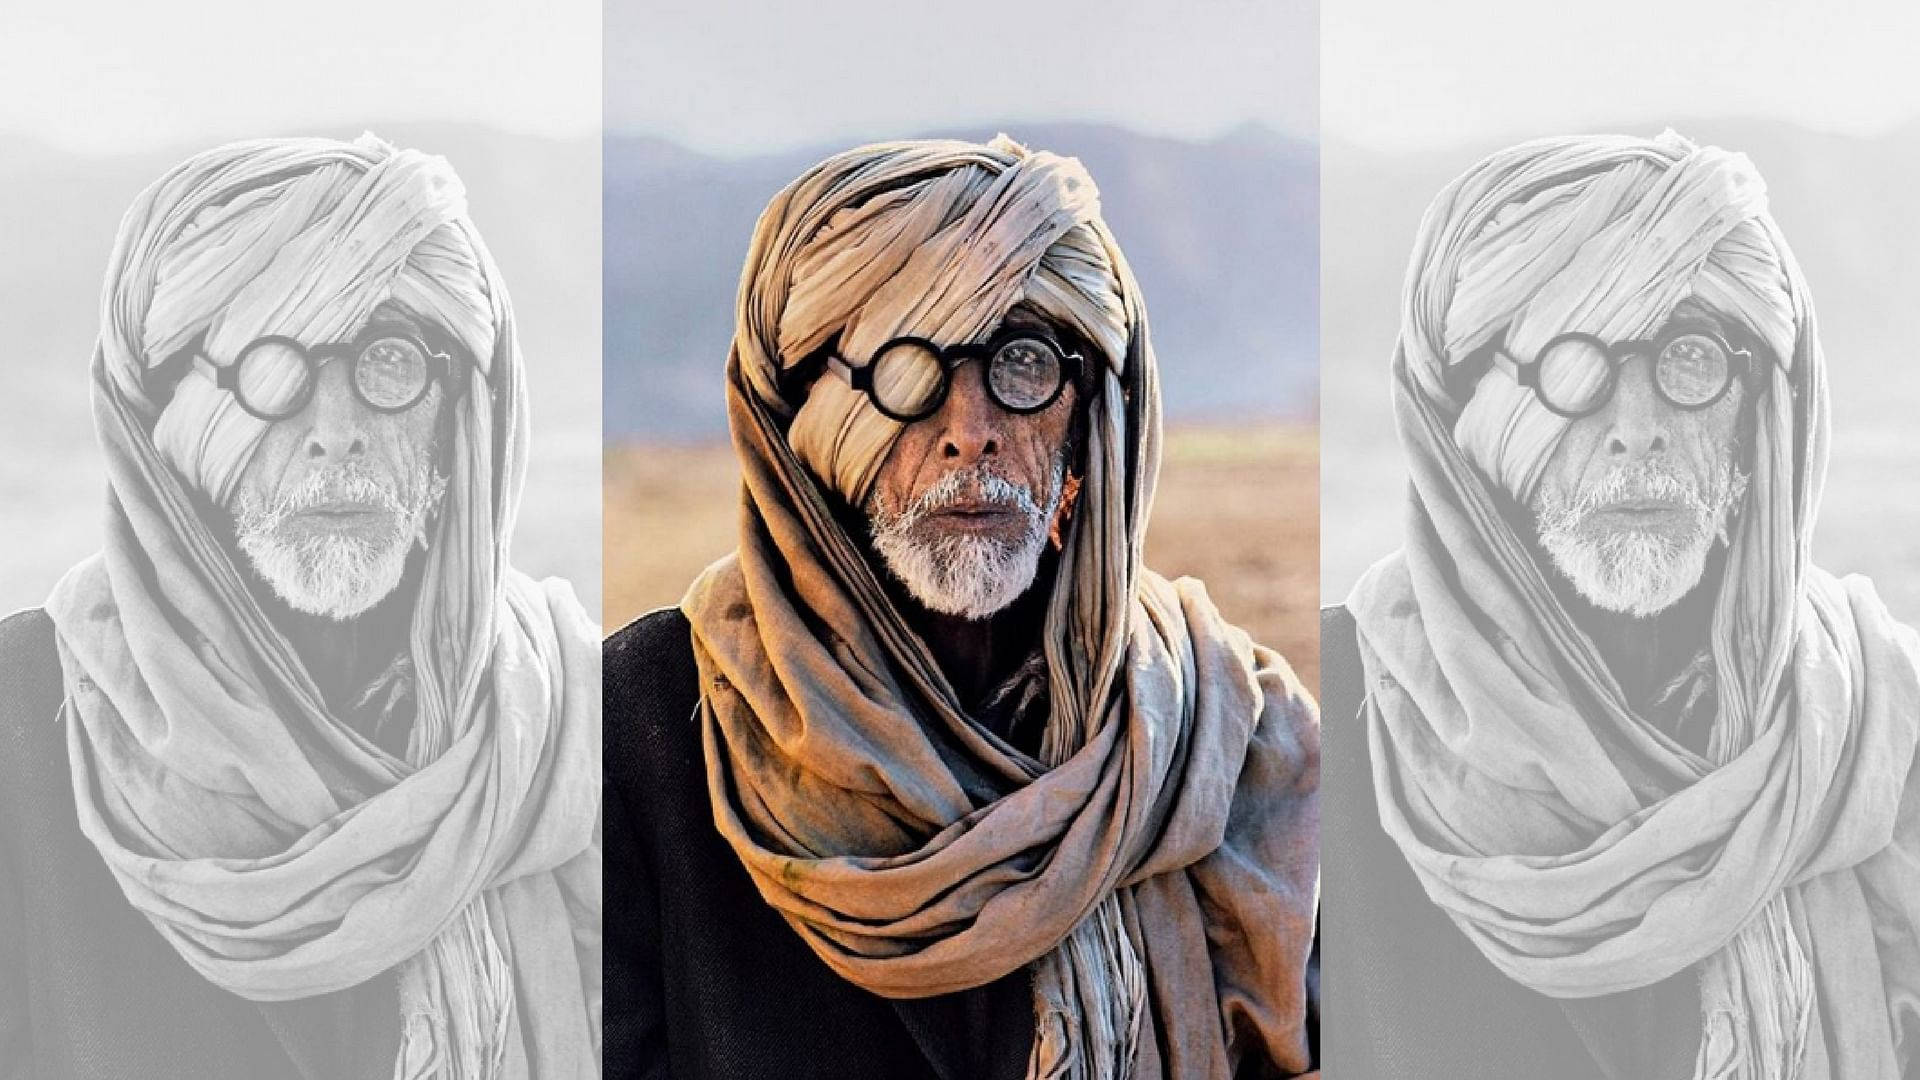 Den digitale collage af filmstjerner skabt af Amitabh Bachchan. Wallpaper